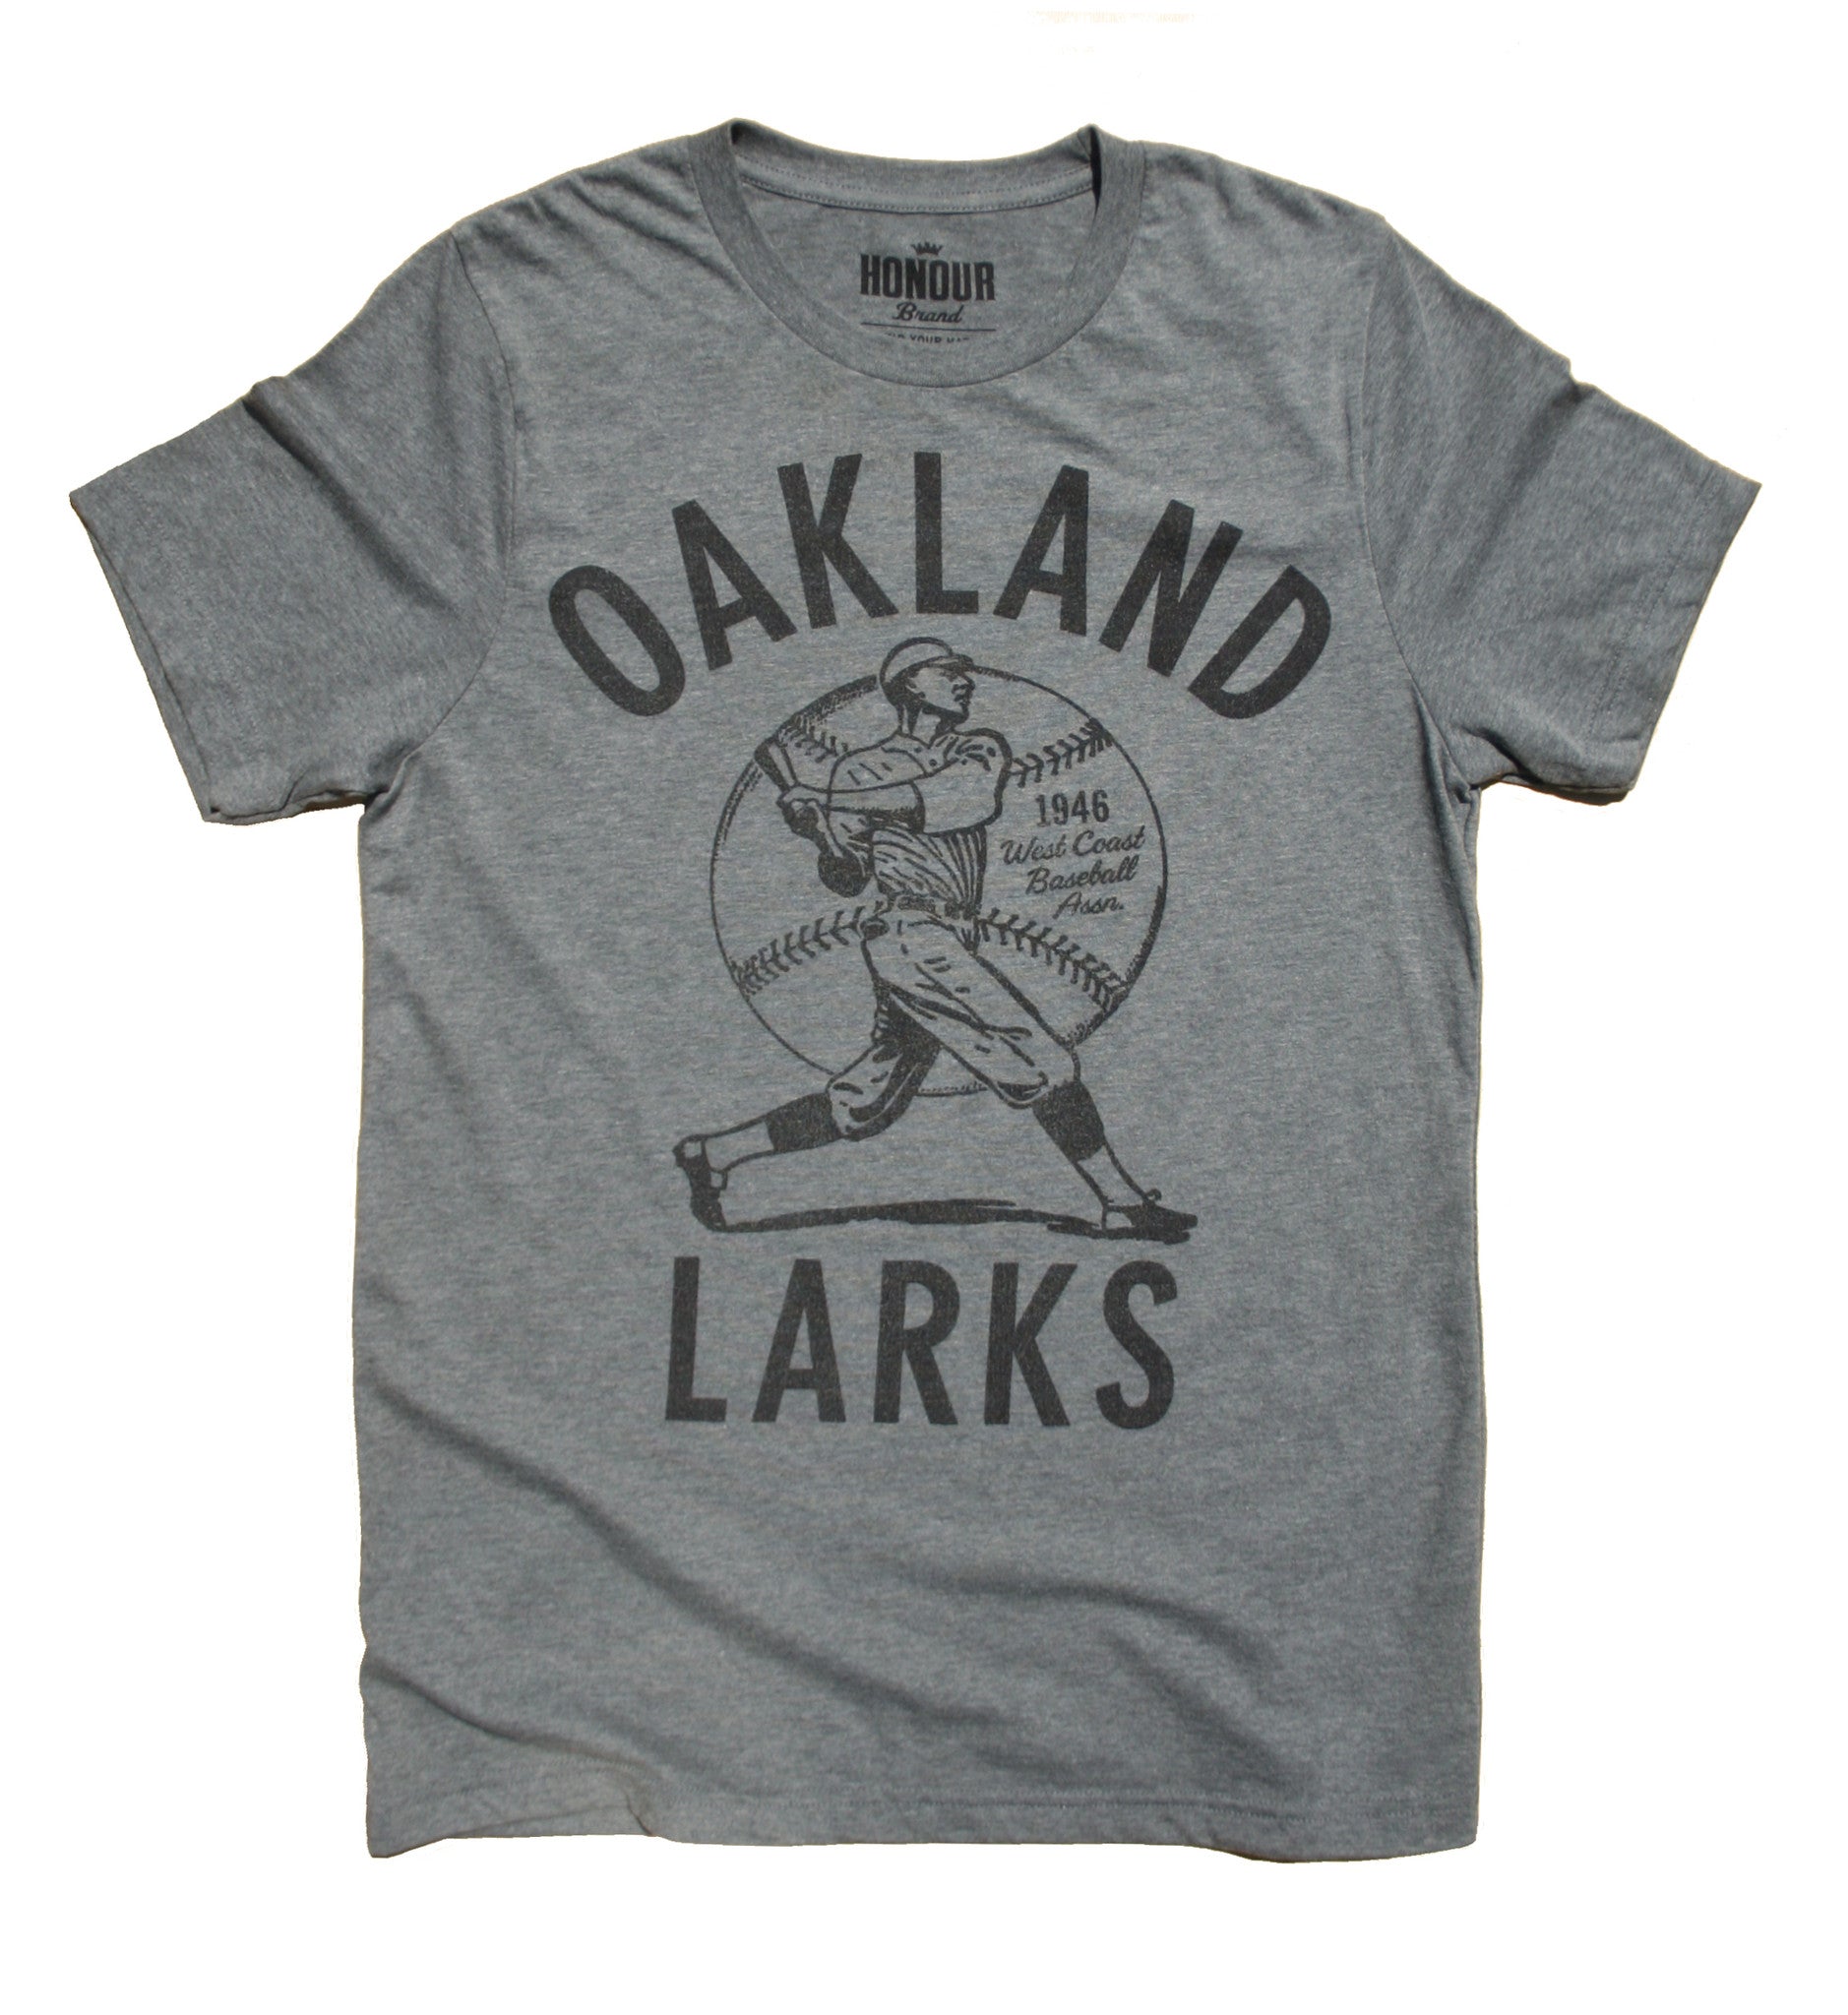 black oakland a's shirt